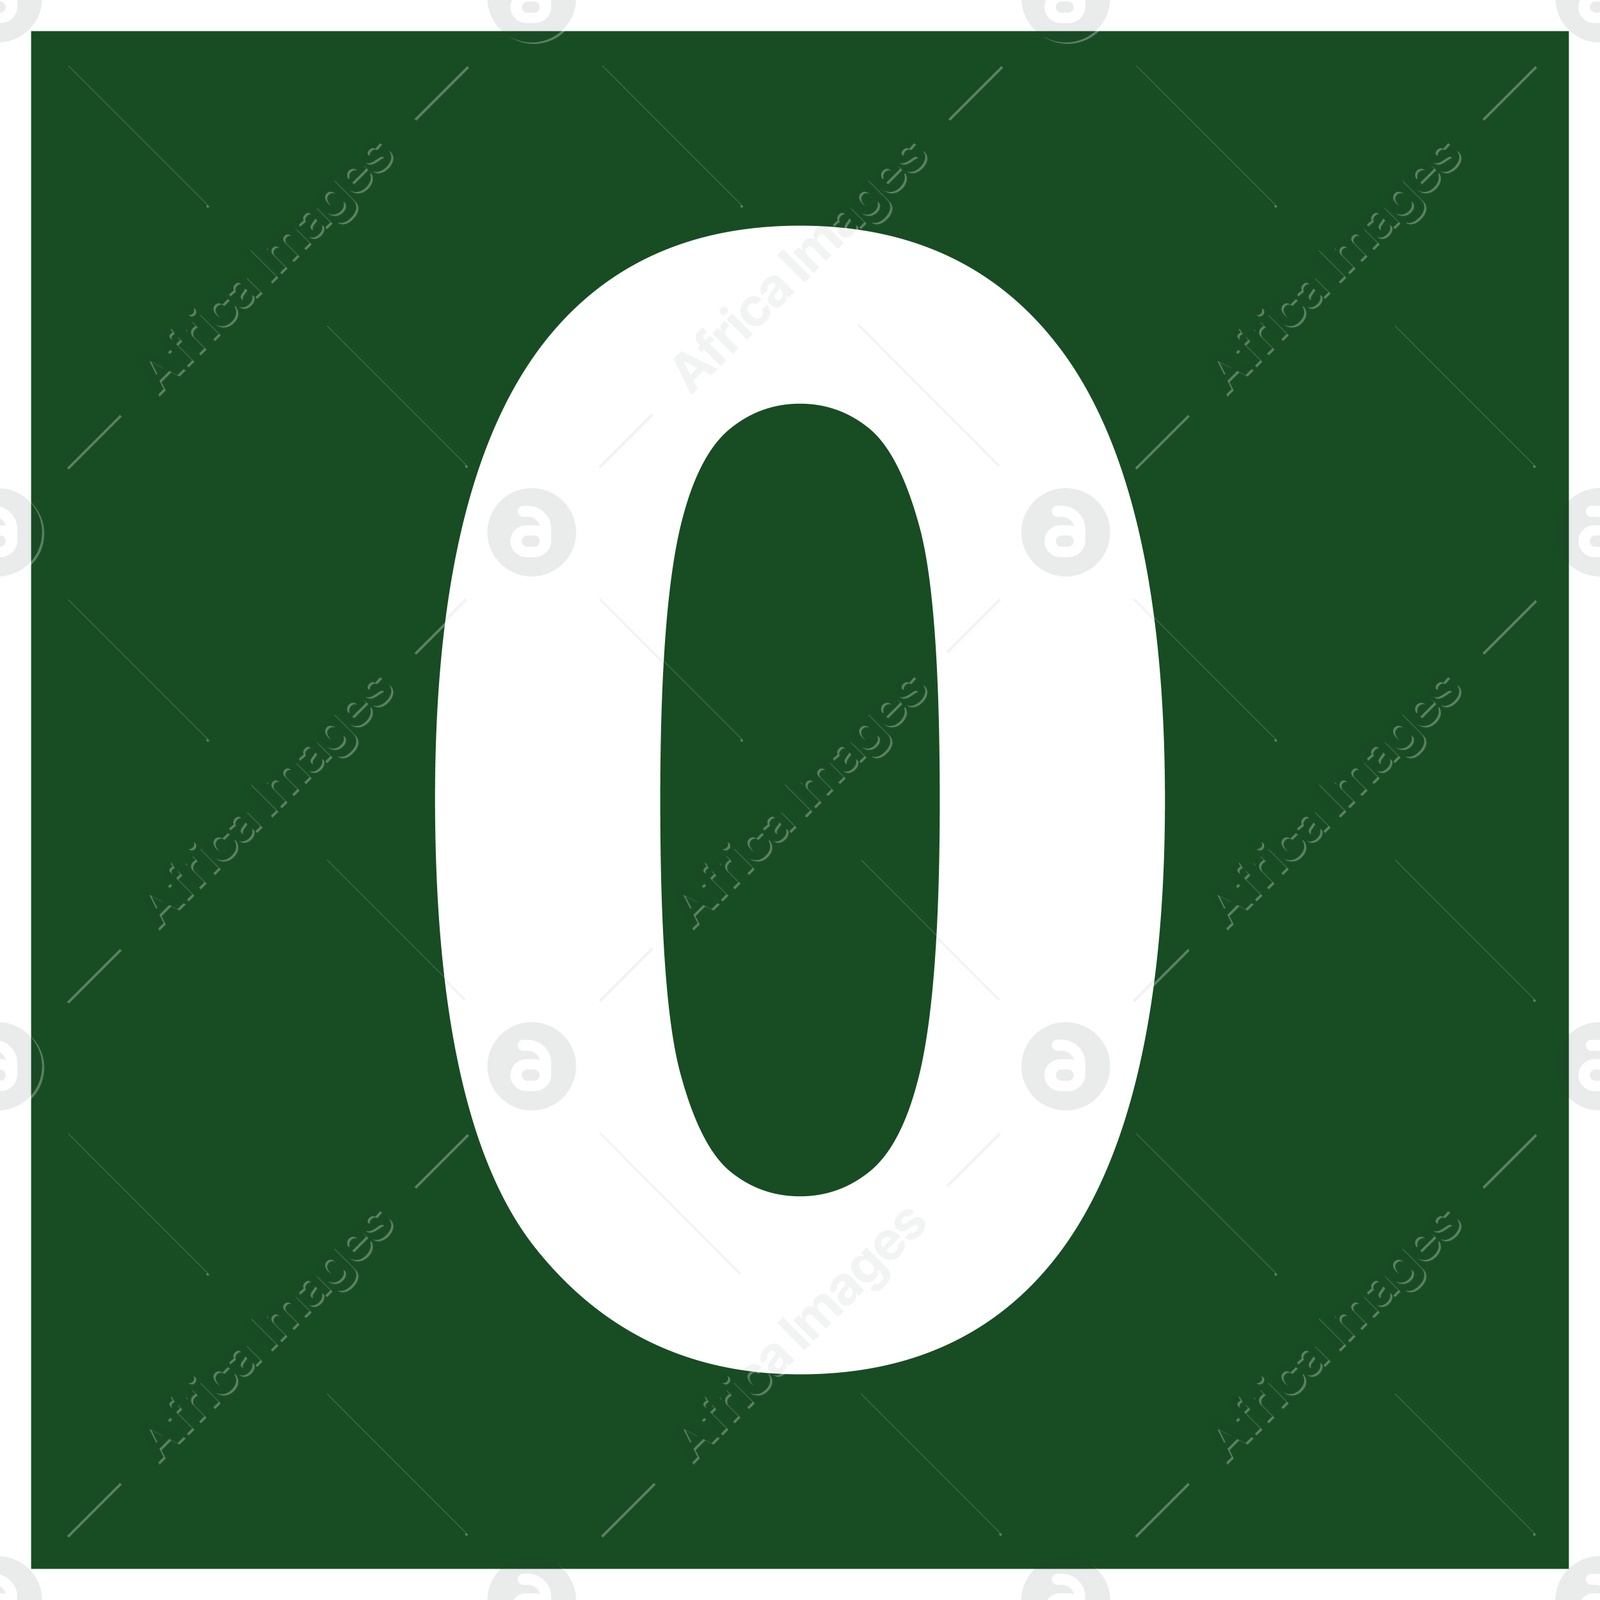 Image of International Maritime Organization (IMO) sign, illustration. . Number "0"